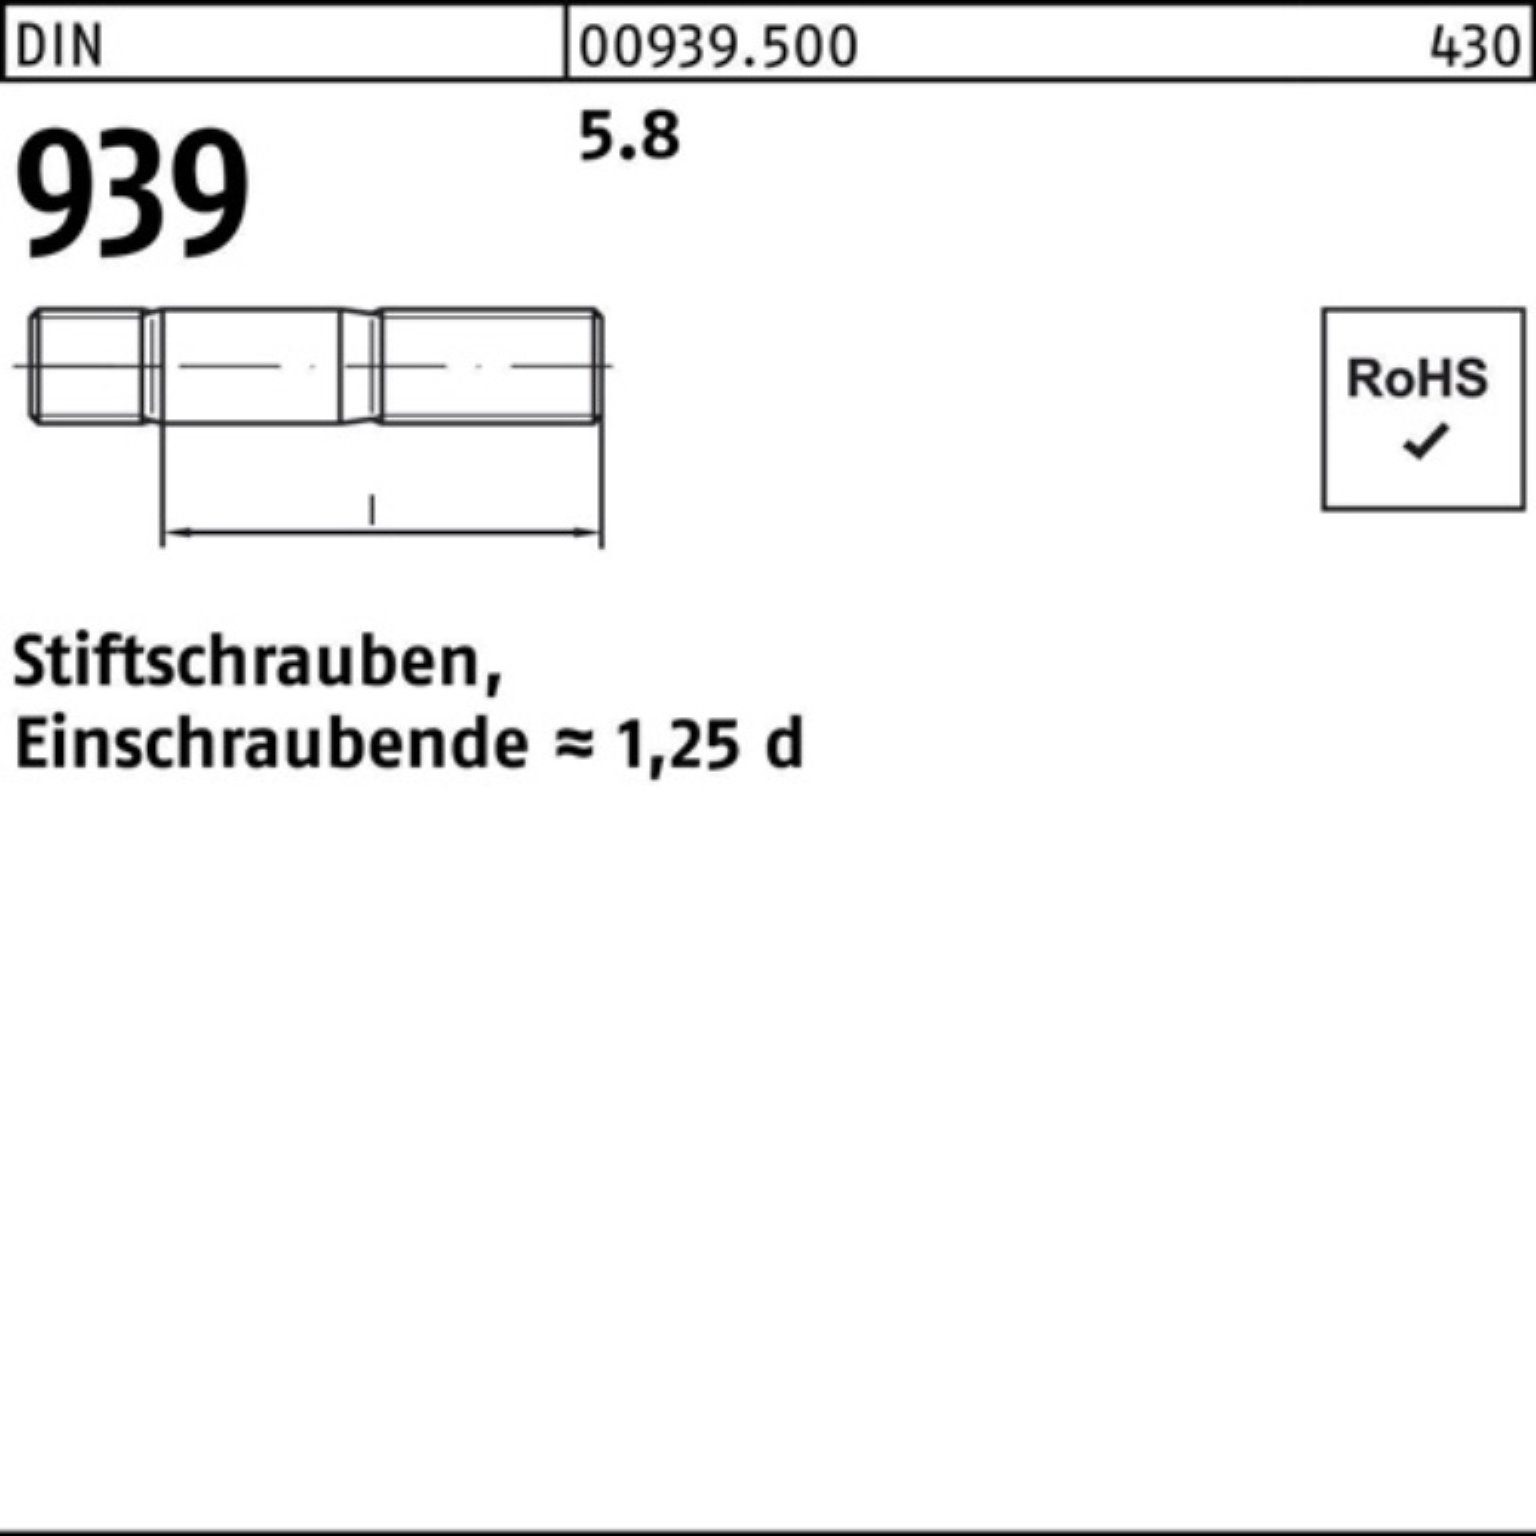 Reyher Stiftschraube 100er Pack Stiftschraube 939 DIN S Einschraubende=1,25d M30x 1 5.8 130